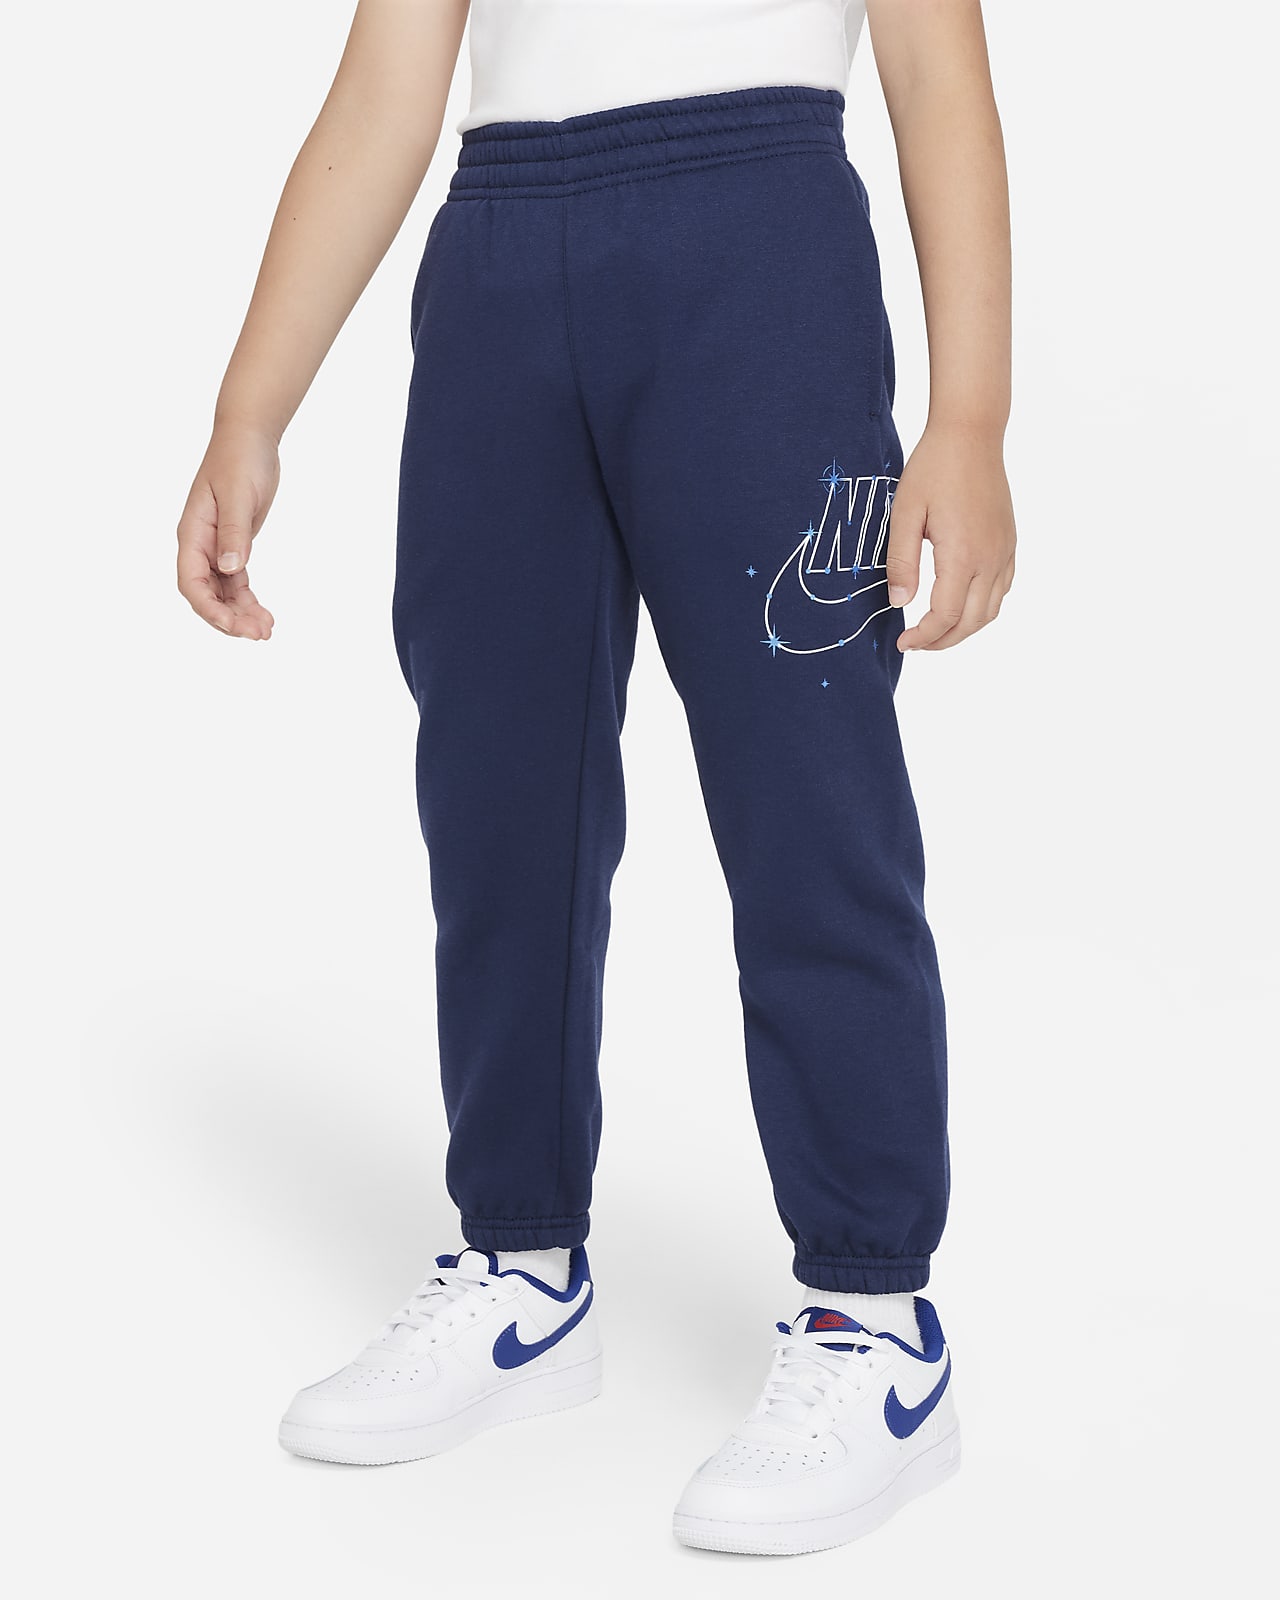 Nike Sportswear Shine Fleece Pants Hose für jüngere Kinder